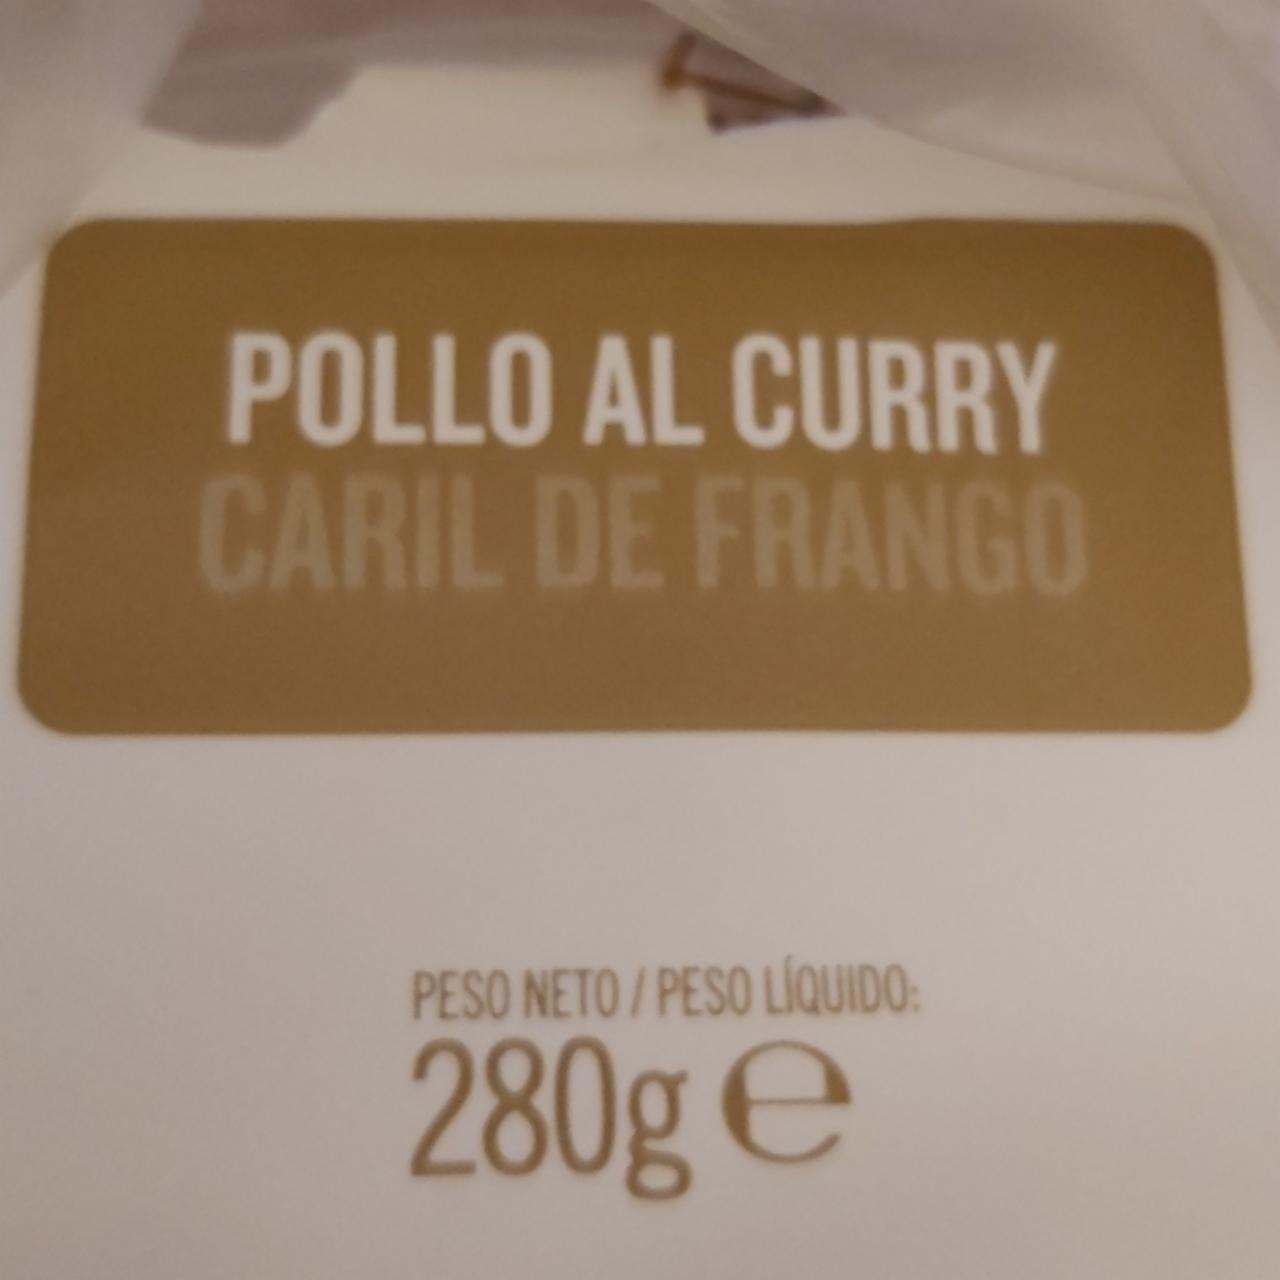 Fotografie - Caril de frango Pollo al curry Hacendado